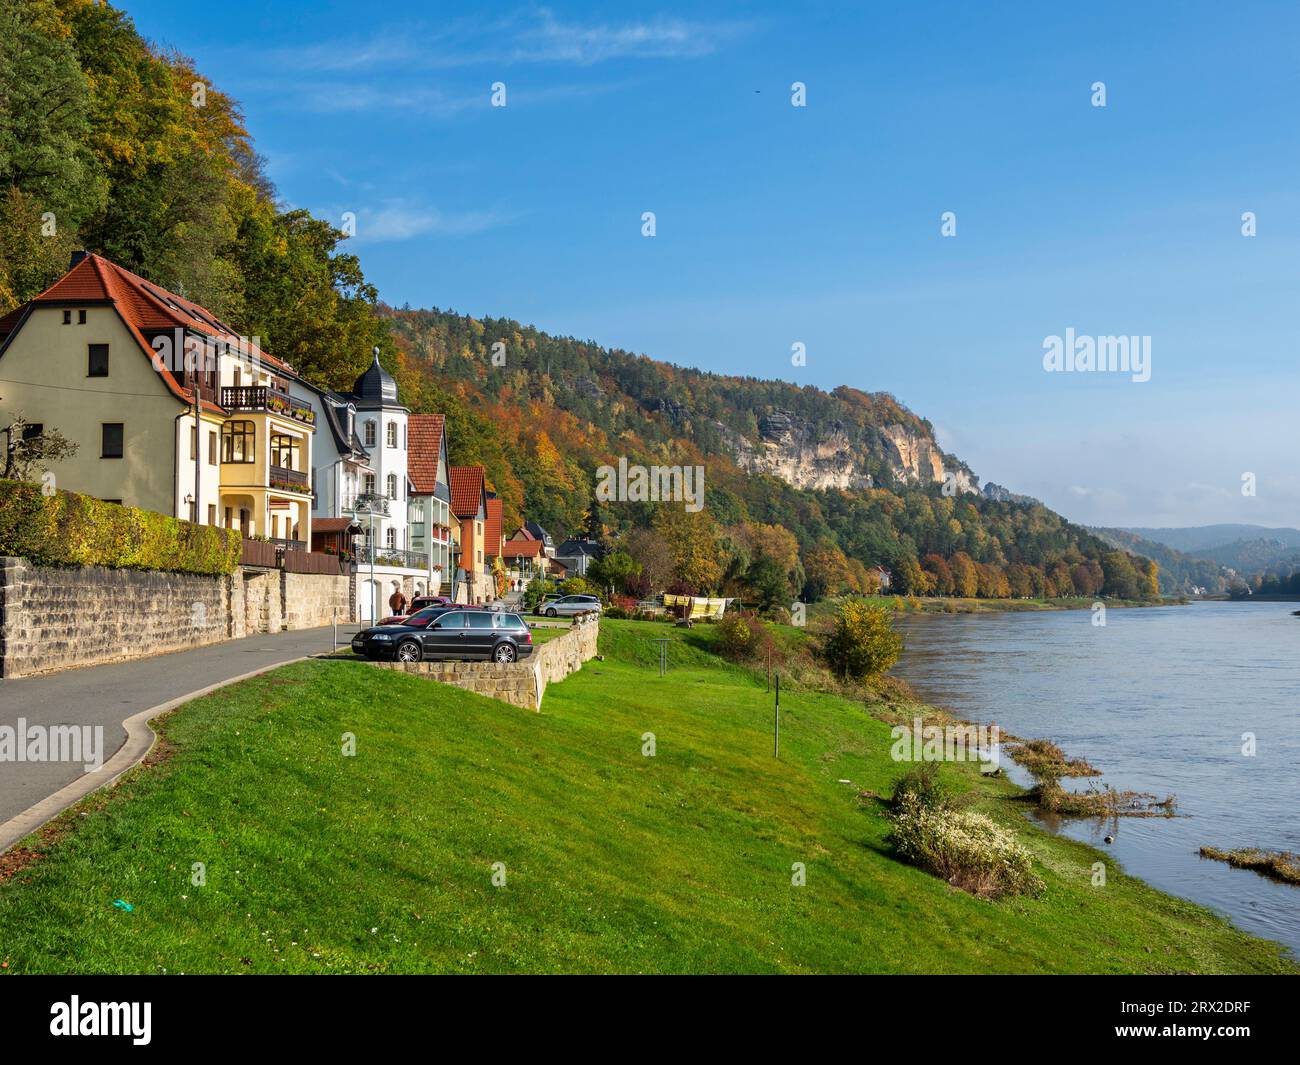 Une vue de Stadt Wehlen sur la rivière Elbe dans le parc national de la Suisse saxonne, Saxe, Allemagne, Europe Banque D'Images